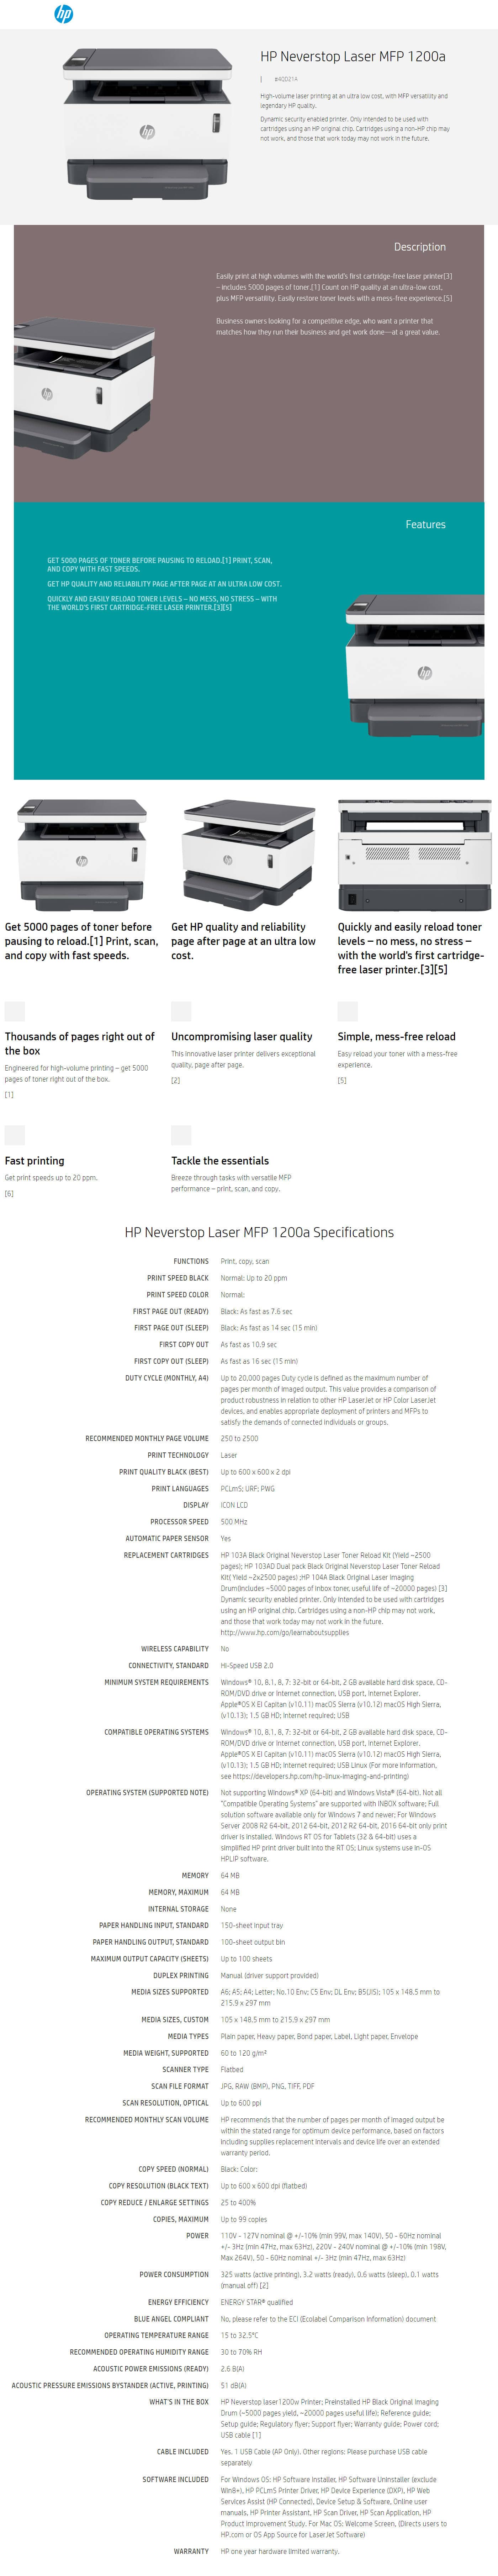 Buy Online HP Neverstop Laser MFP 1200a Printer (4QD21A)